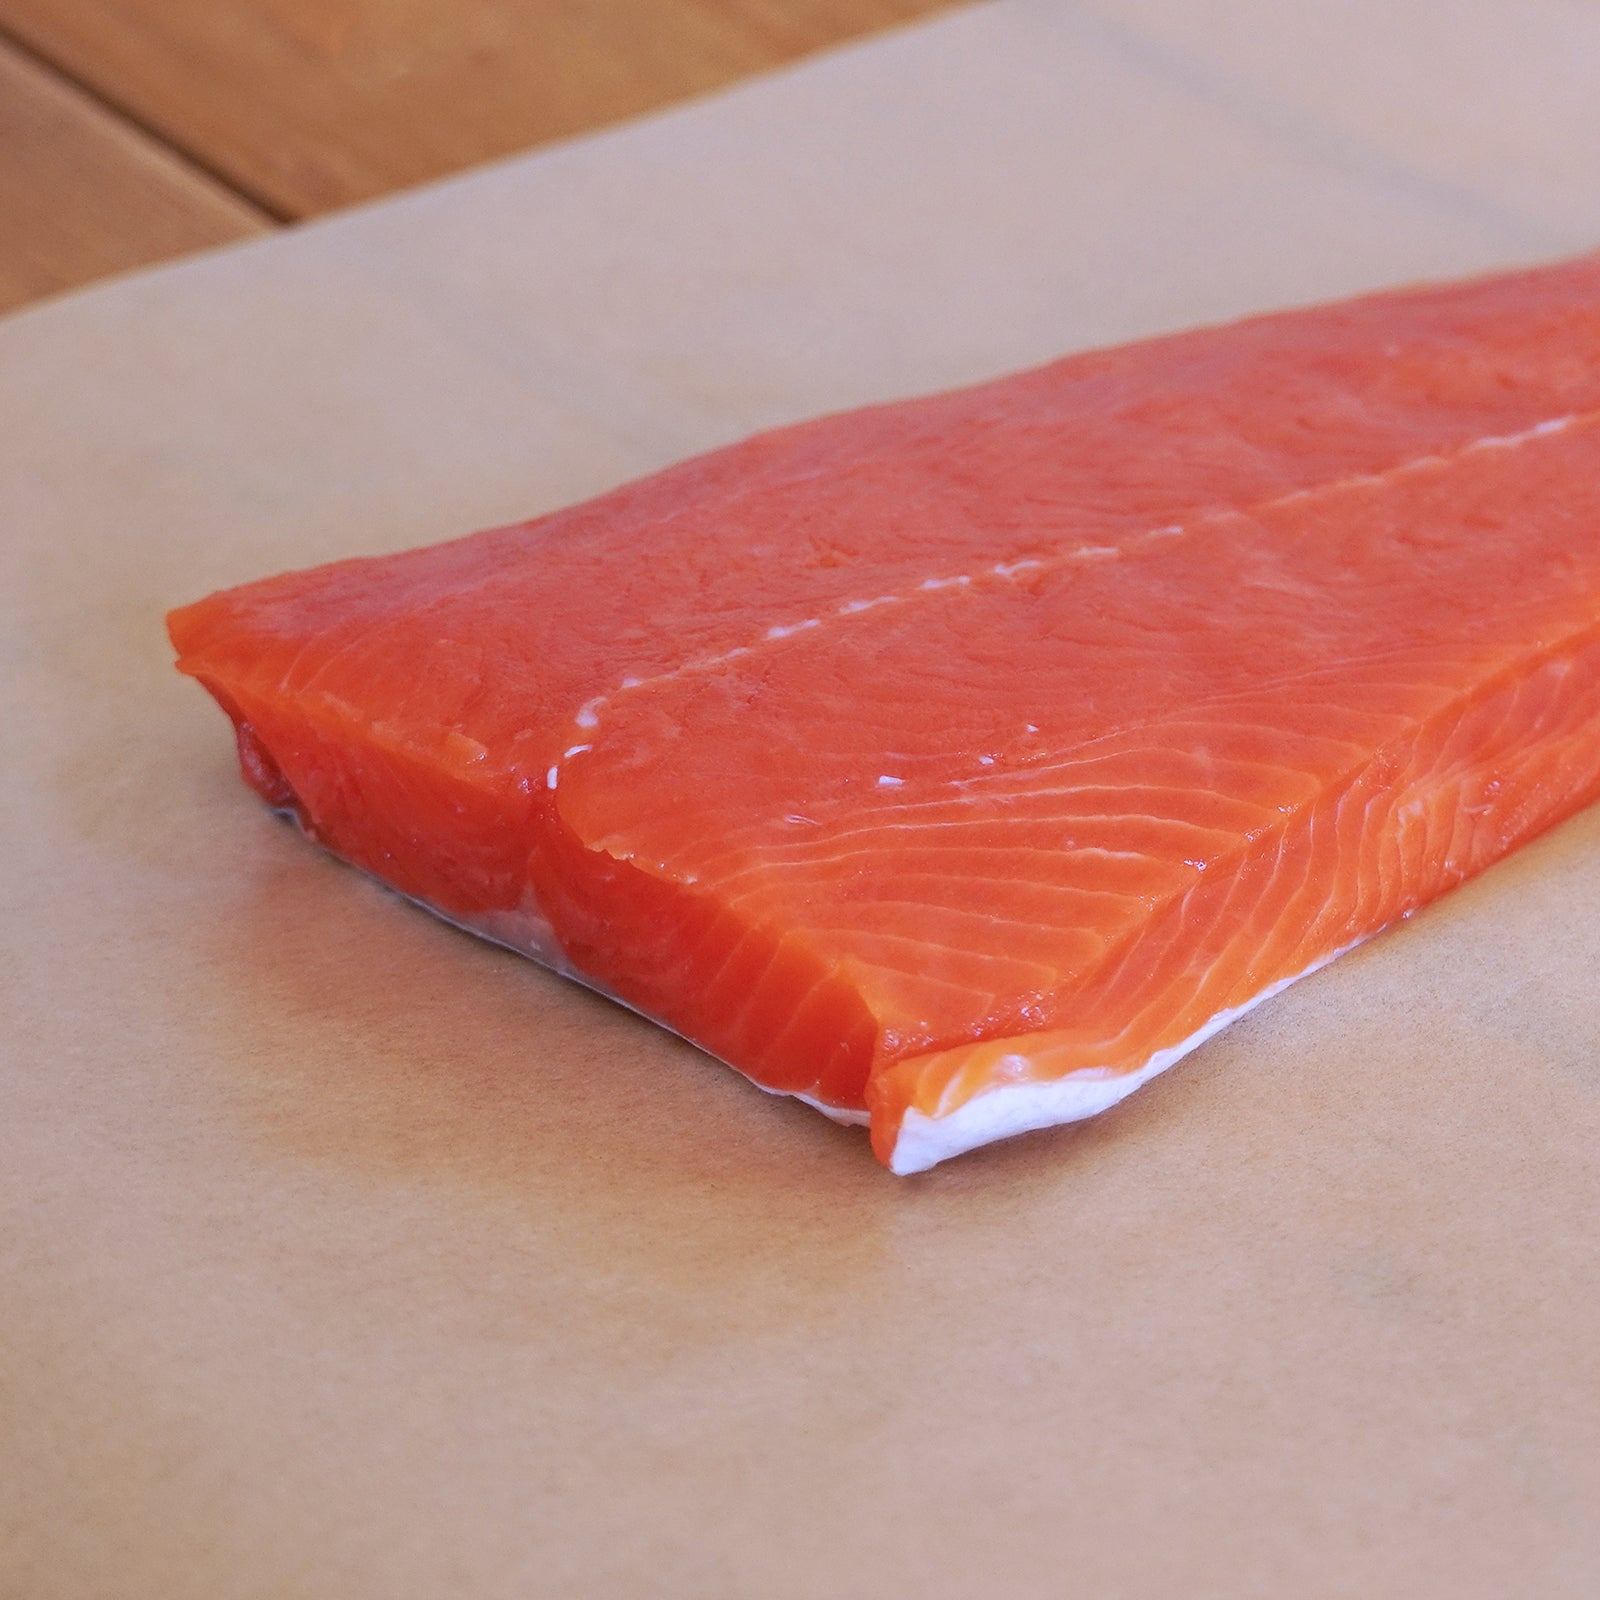 天然 高級 紅鮭 サーモン 切身 カナダ産 (200g) ホライズンファームズ